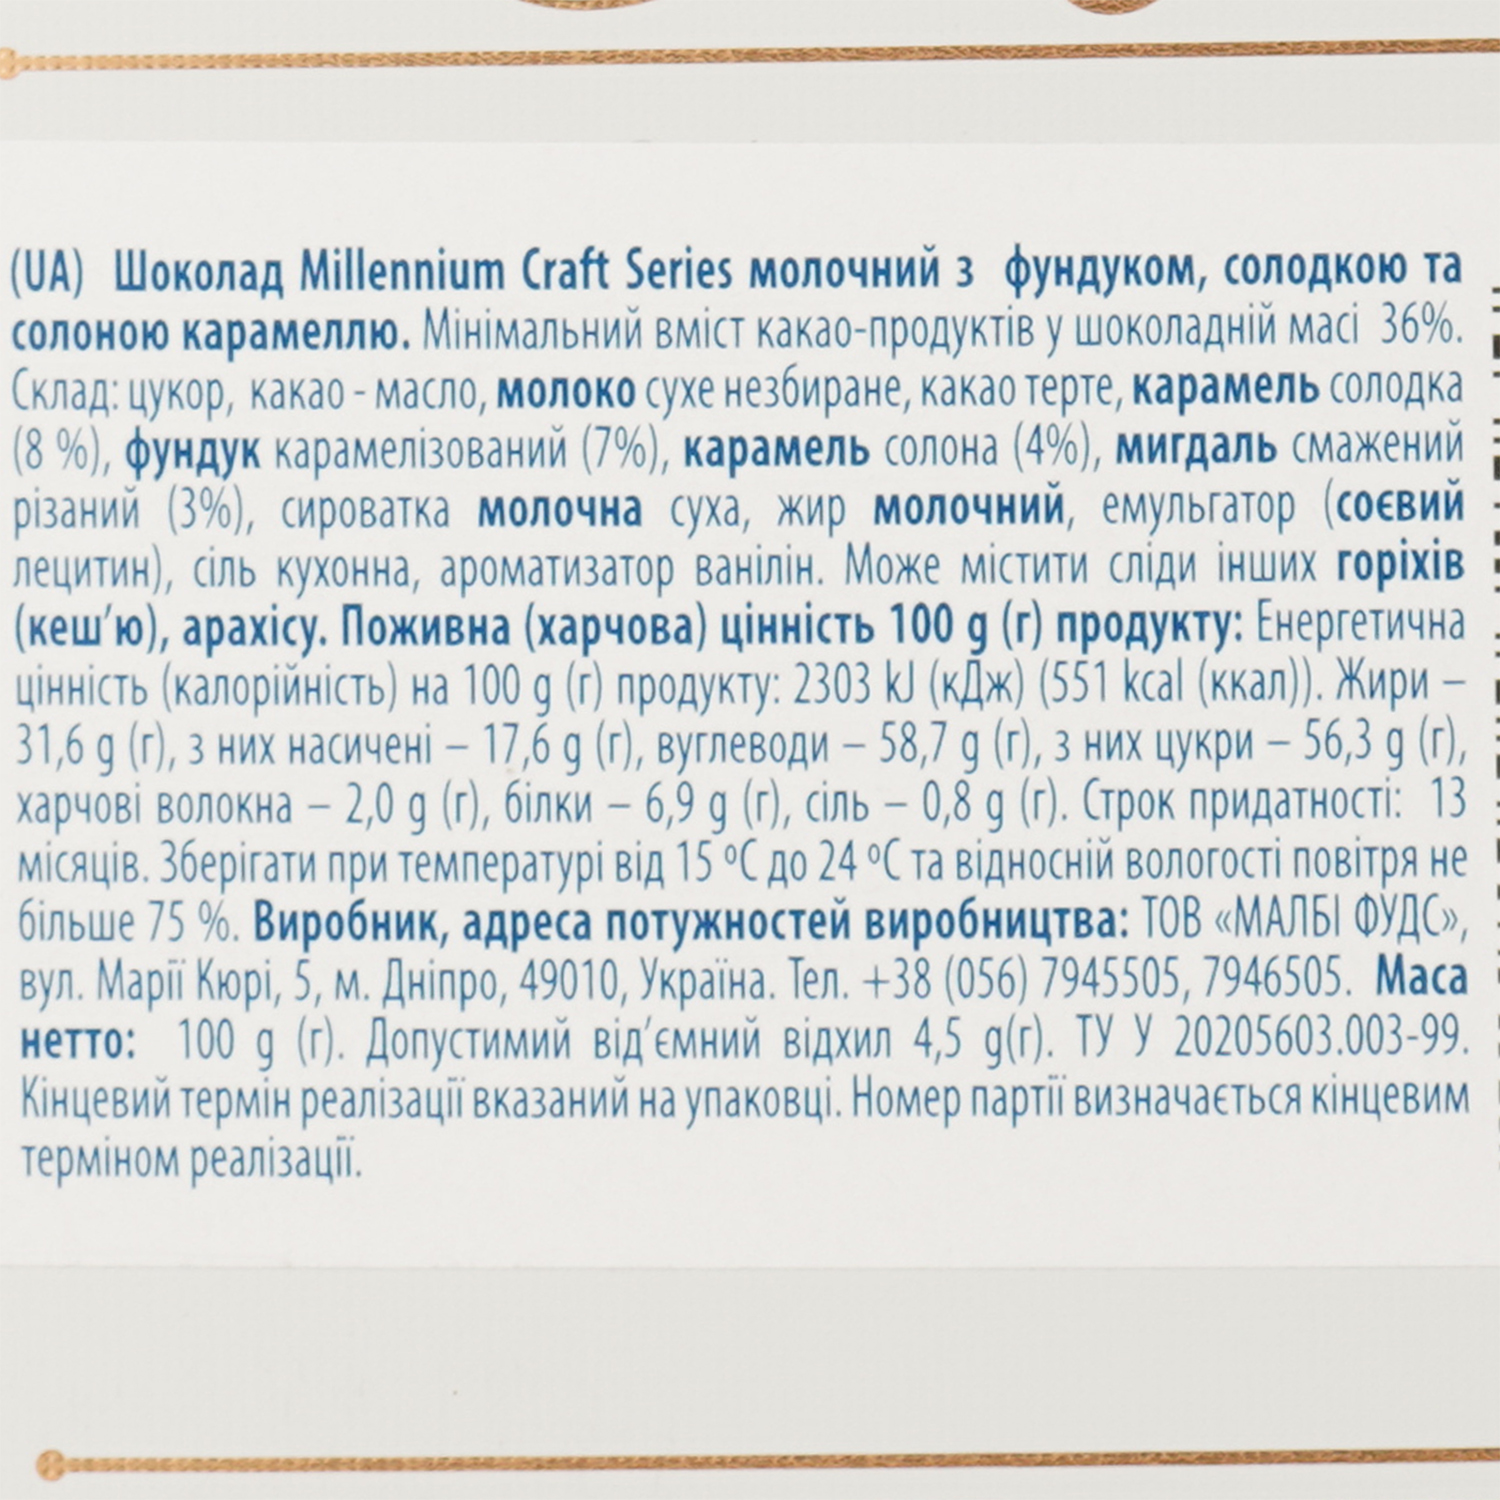 Шоколад молочный Millennium Craft Series фундук-карамель, 100 г (917262) - фото 3